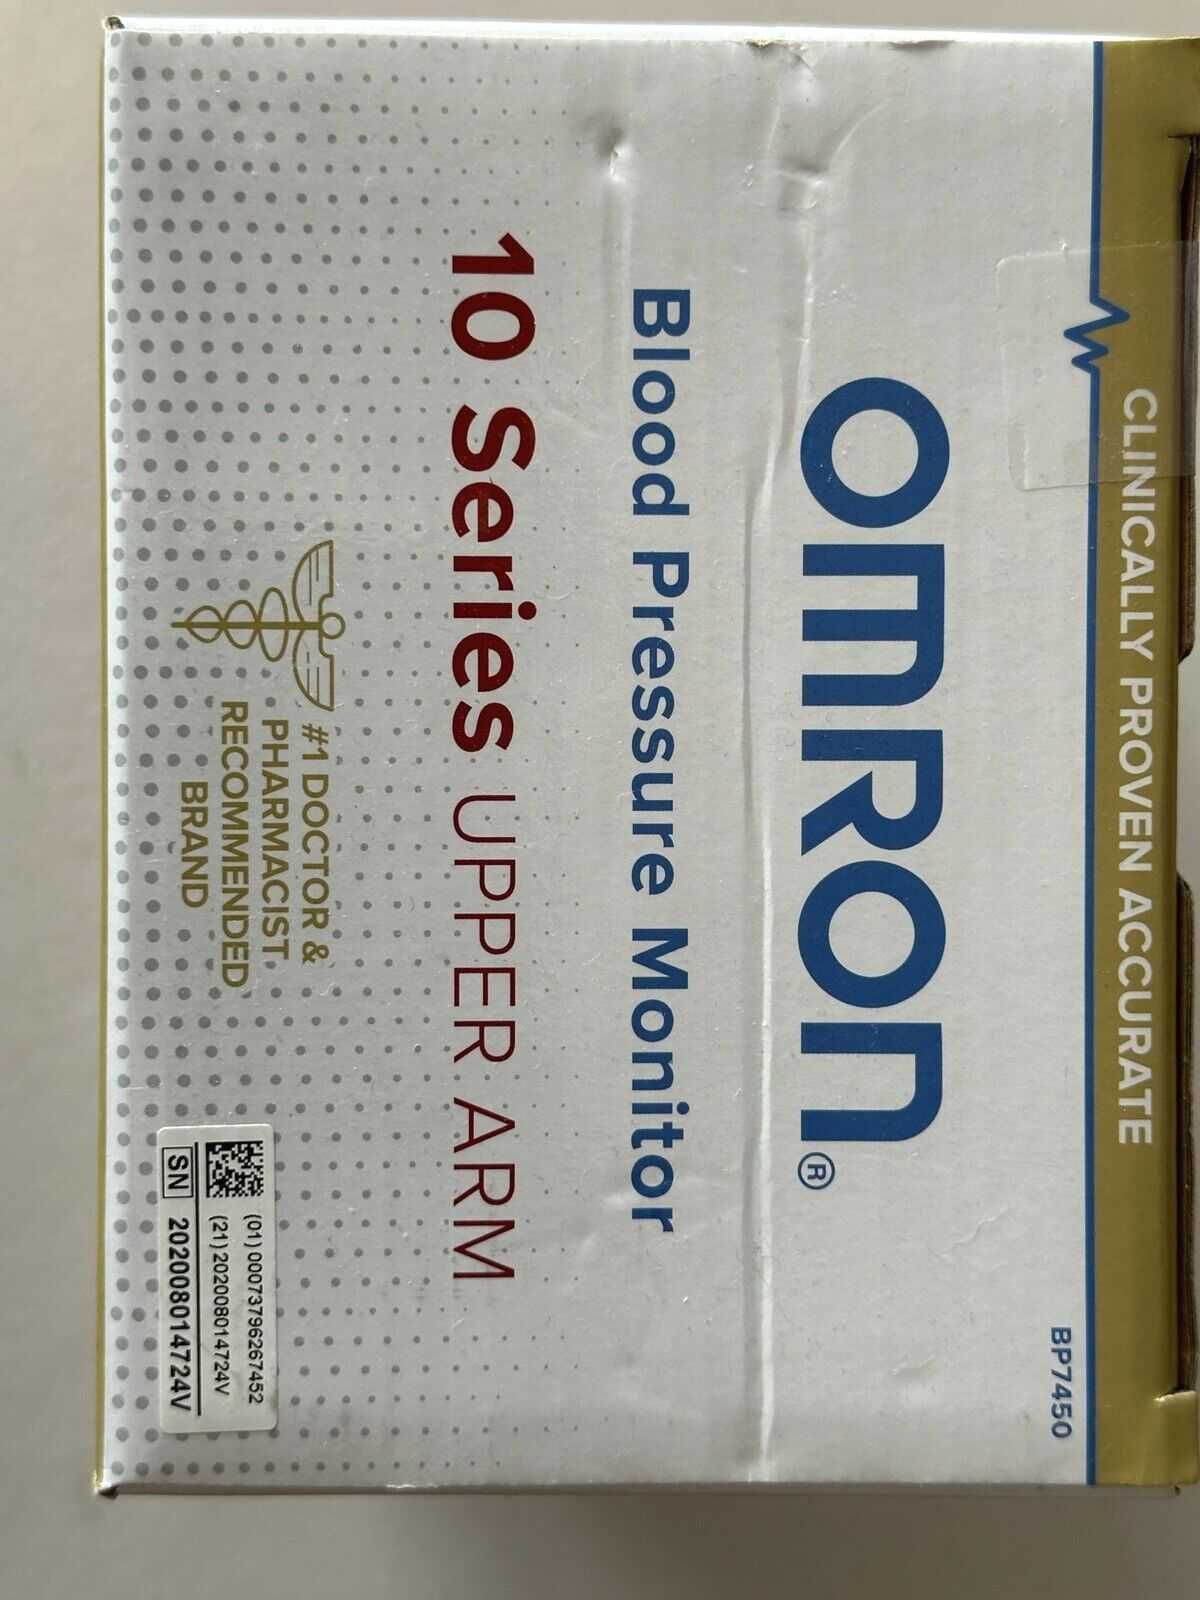 Тонометр Omron BP7450 10 серия - лучший и точный Омрон ВР7450. Новый